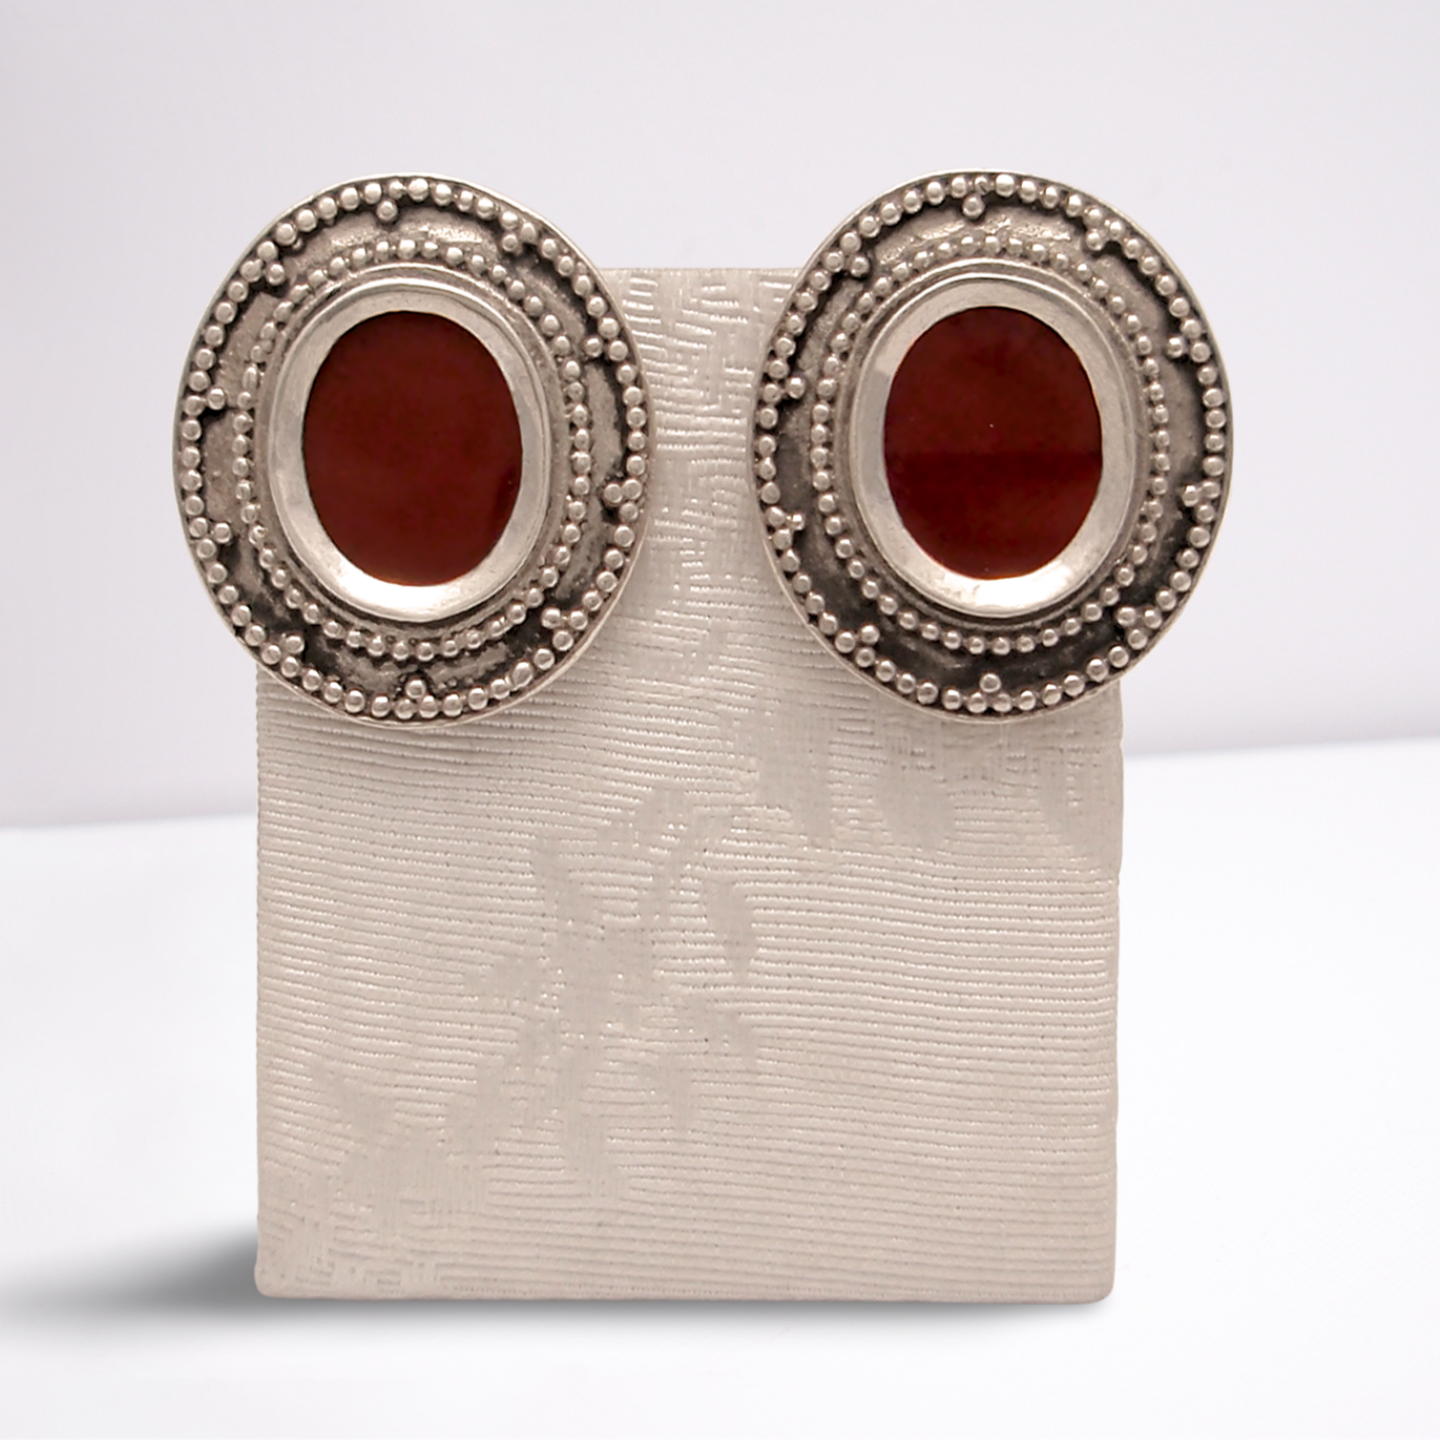 Byzantine Oval Earrings in Sterling Silver with Carnelian (GT-01)